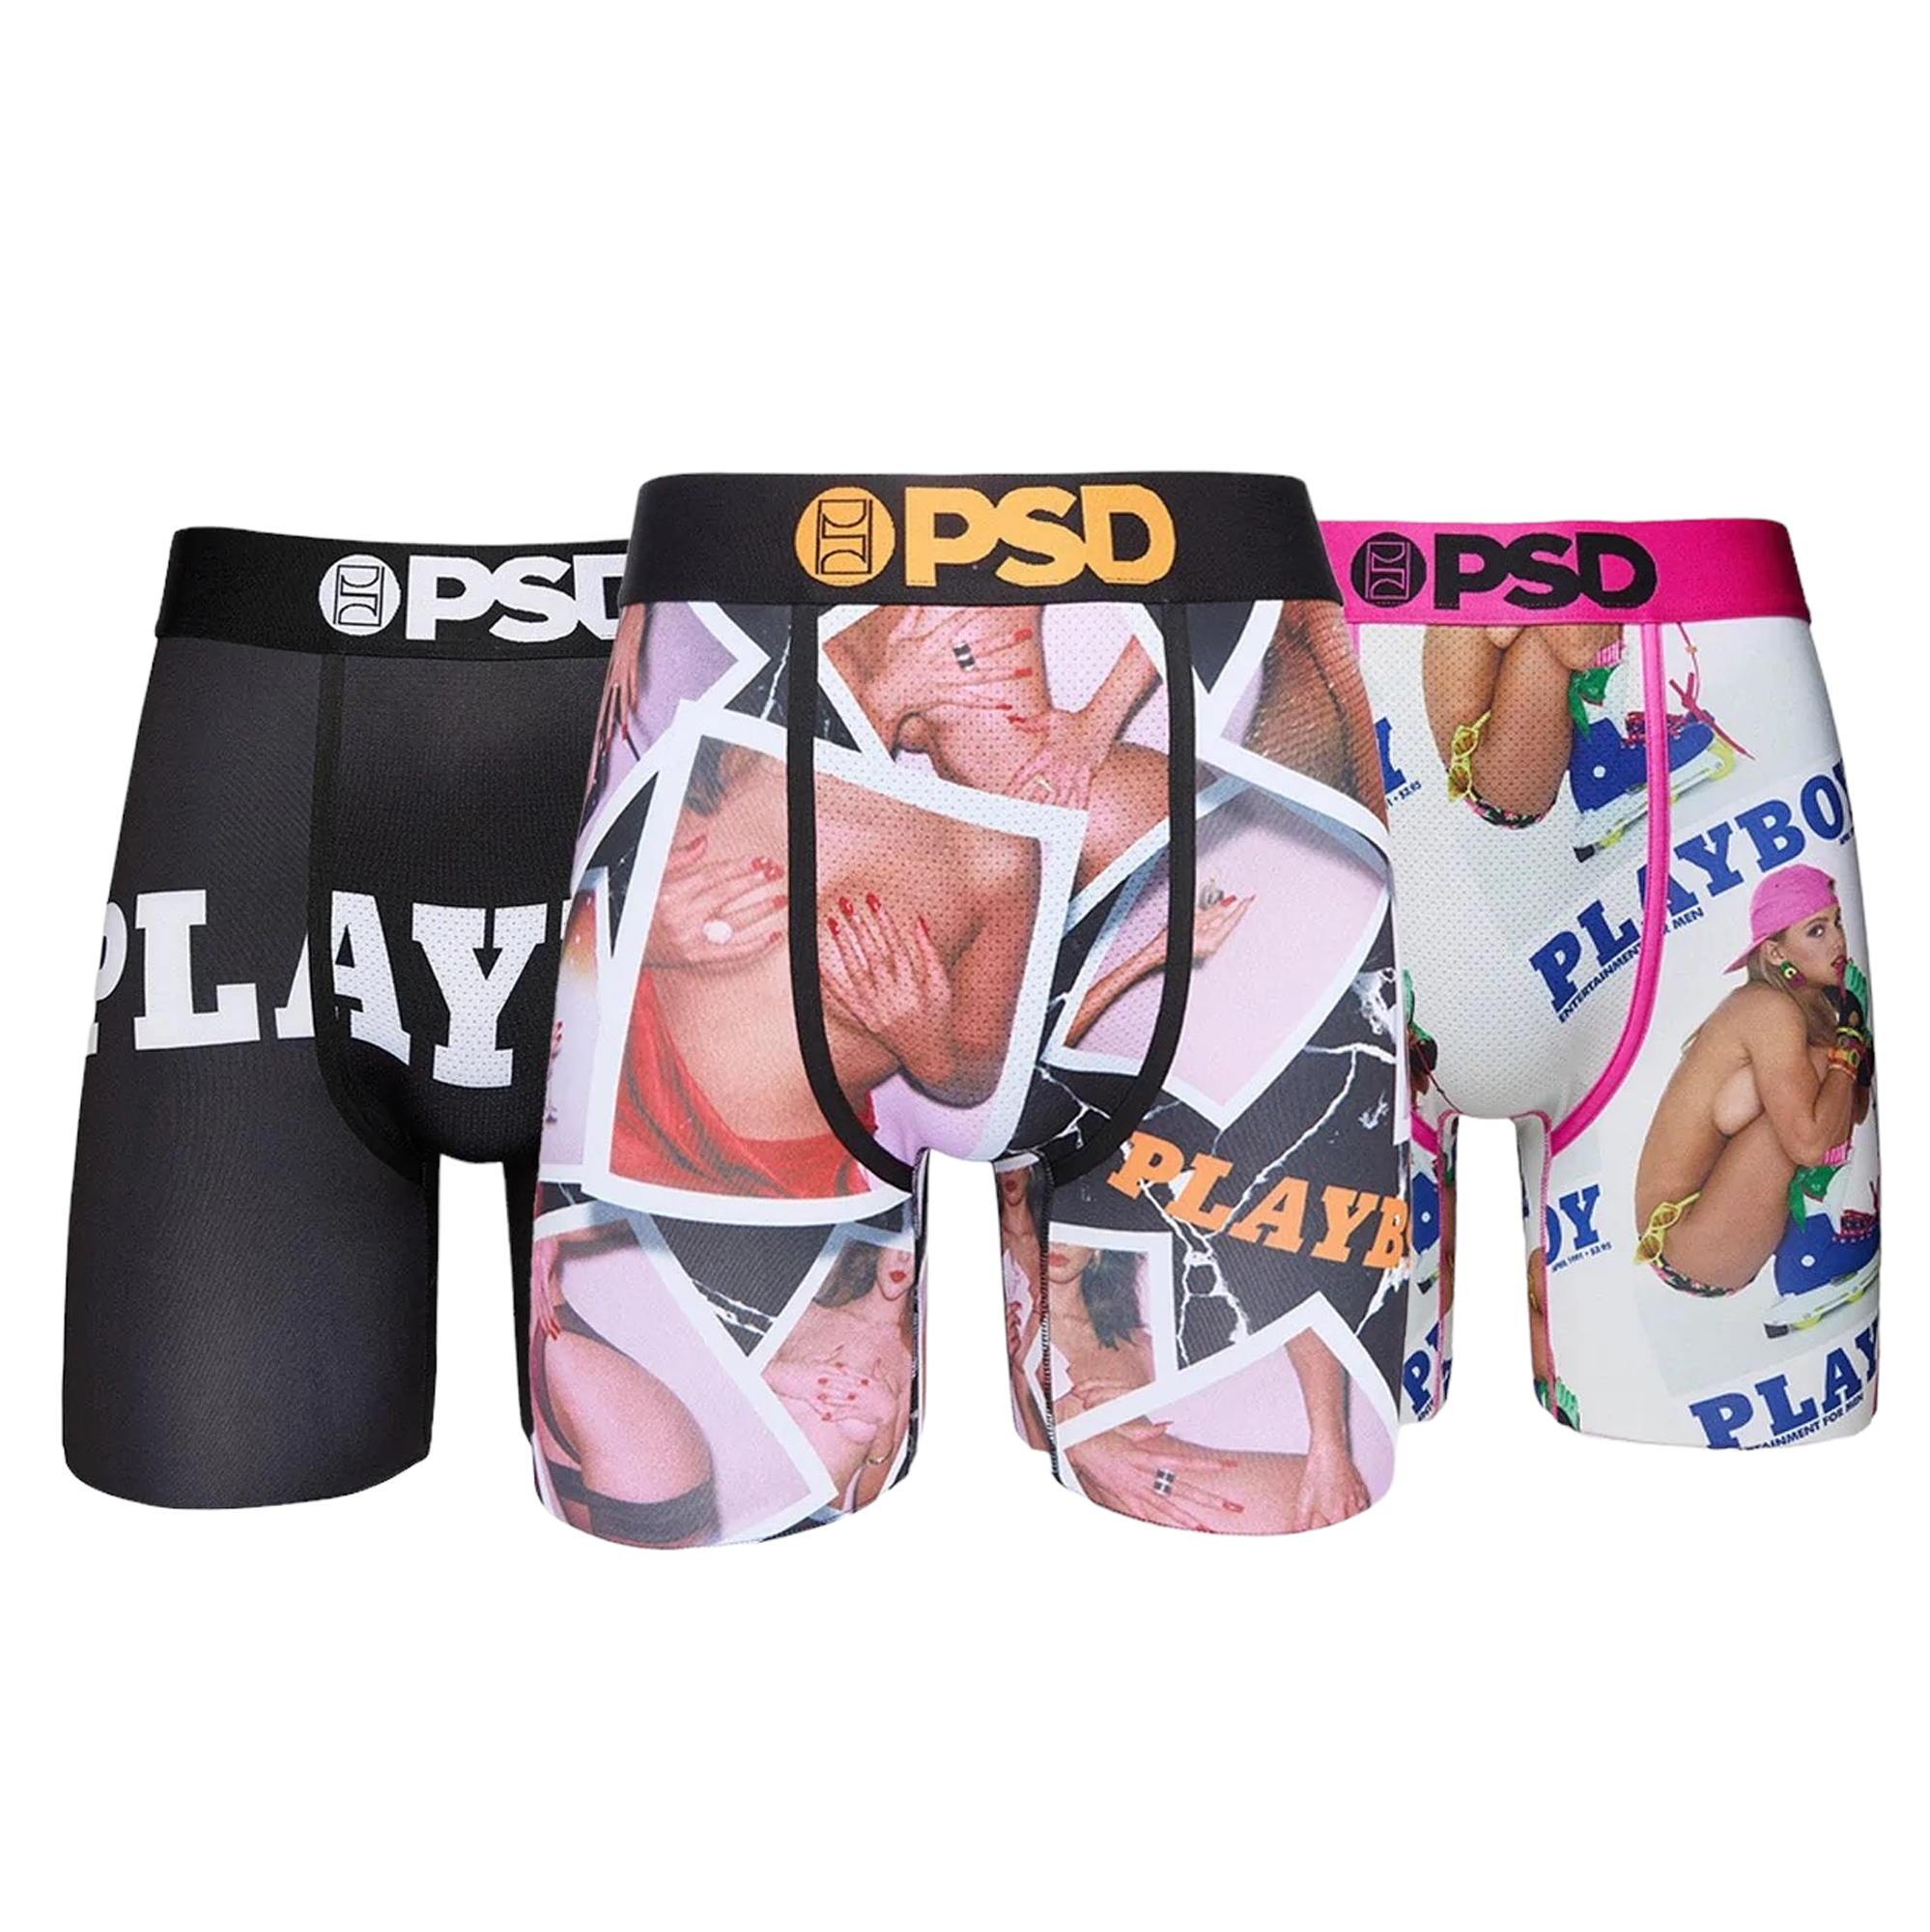 Friends Boxer Briefs - PSD Underwear, psd 